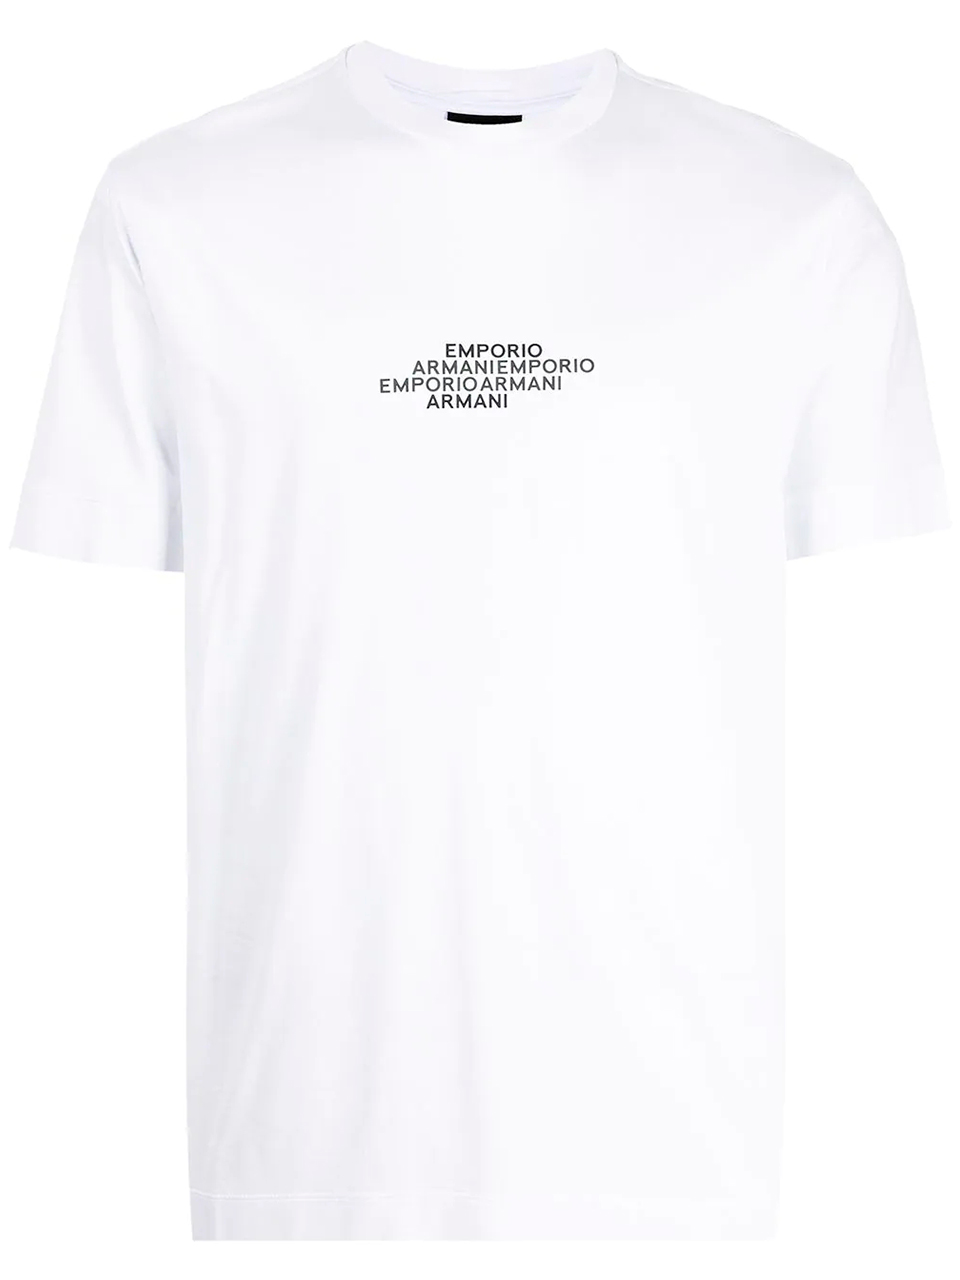 Imagem de: Camiseta Emporio Armani Branca com Estampa Preta Pequena